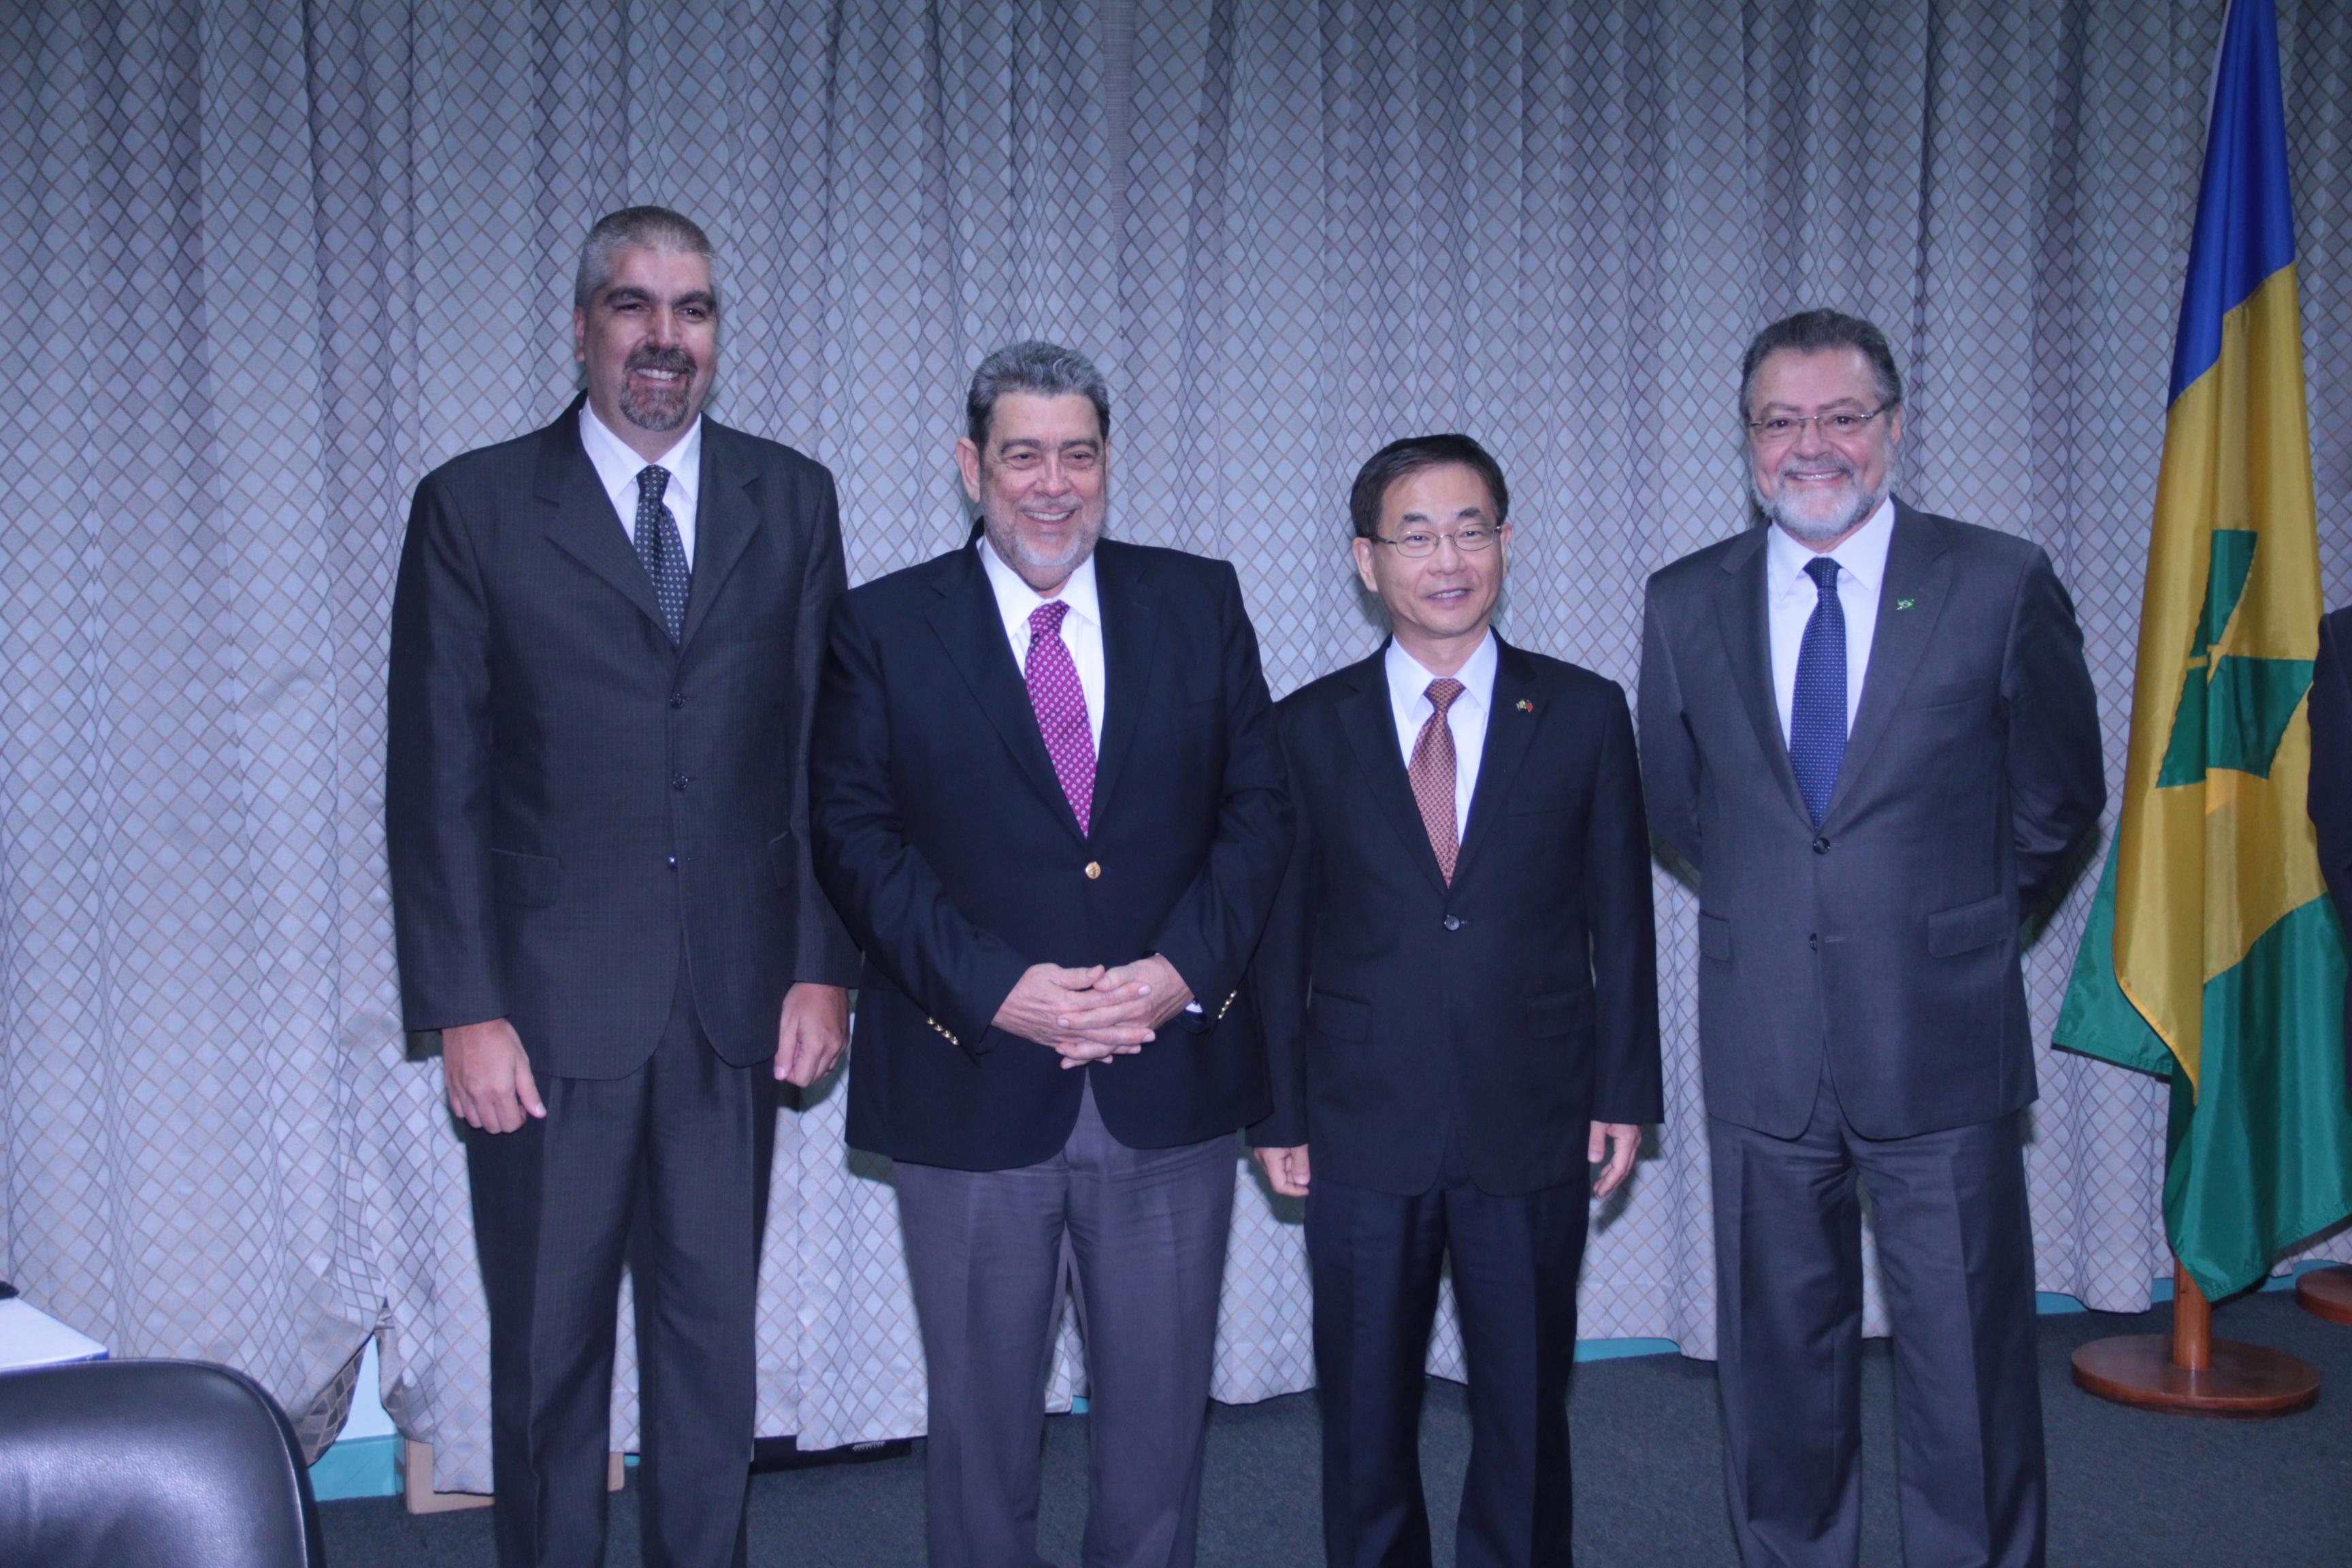 聖文森龔薩福總理與駐聖使節合影
(由左至右：委內瑞拉駐聖大使、龔總理、葛葆萱大使、巴西駐聖大使)
(照片來源:Kenton Chance)